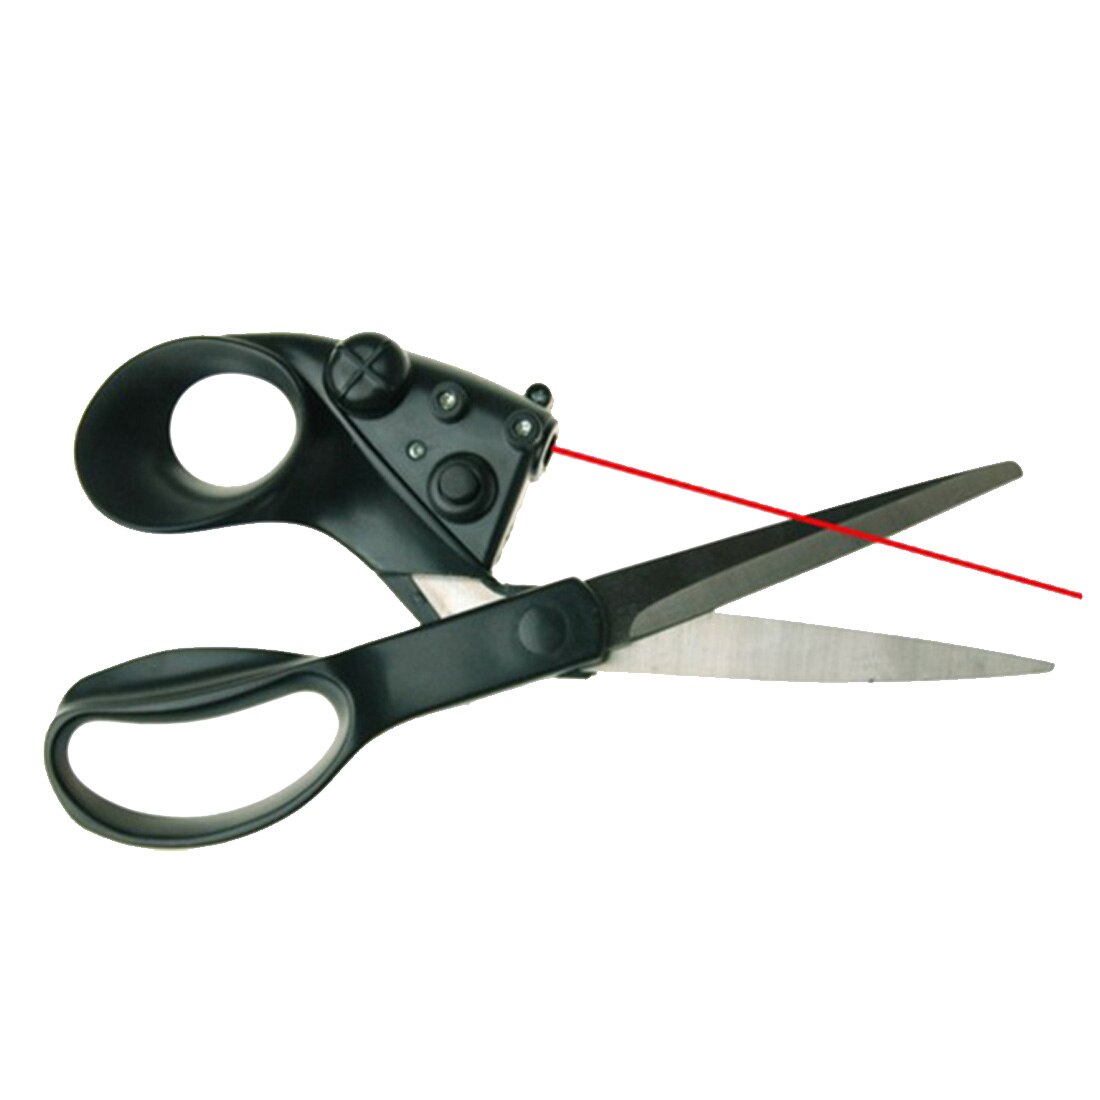 Laser Guided Scissors - Giftbuzz.com